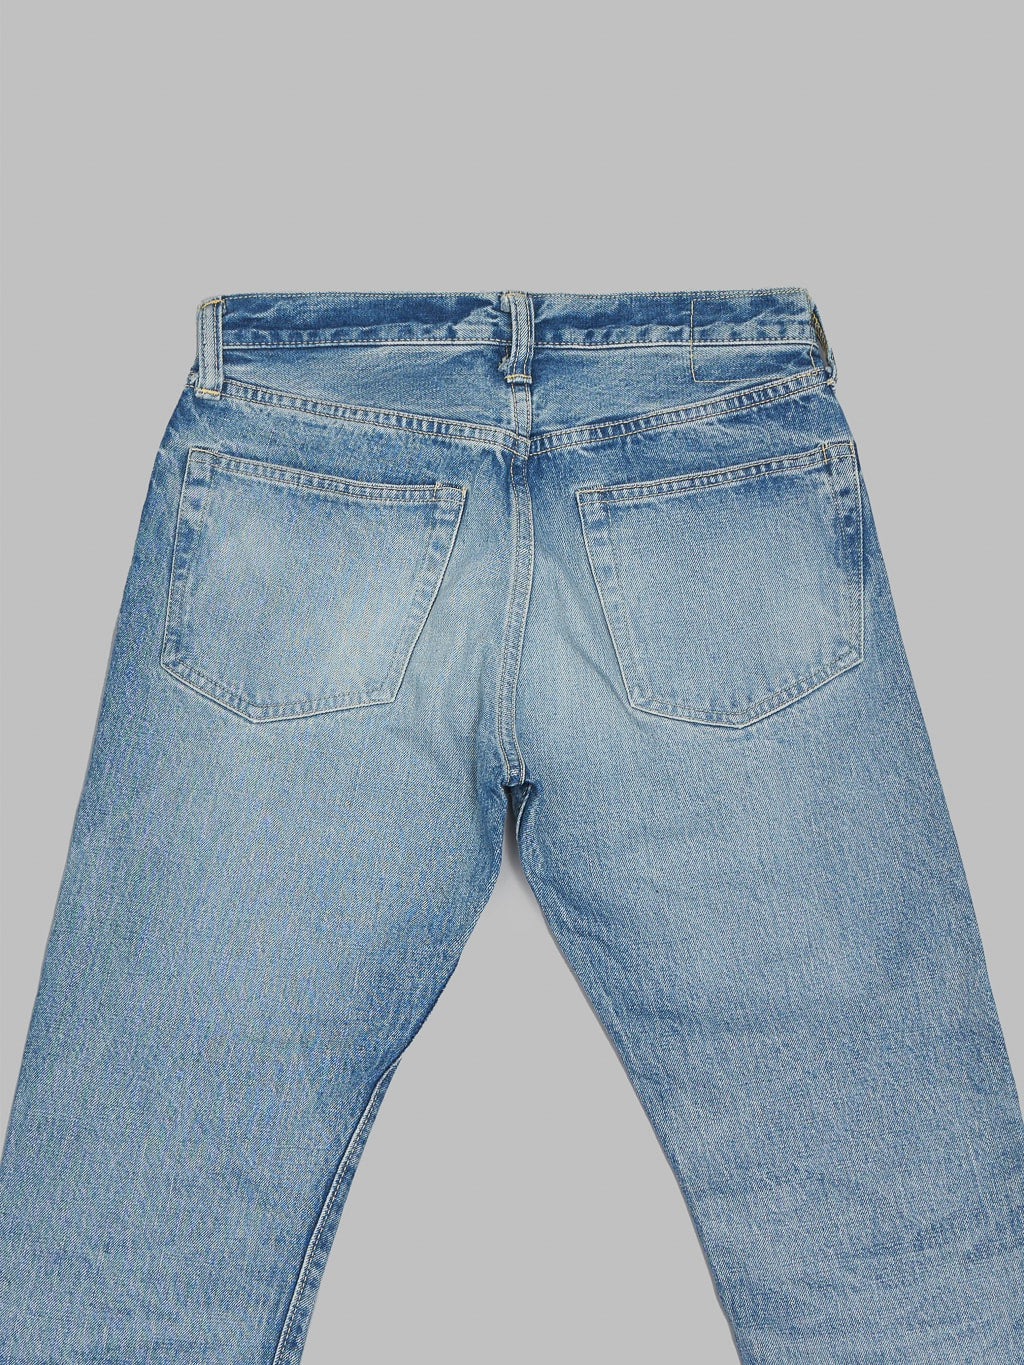 Sugar Cane 2021SW Model Stonewashed Slim Tapered selvedge Jeans back pockets